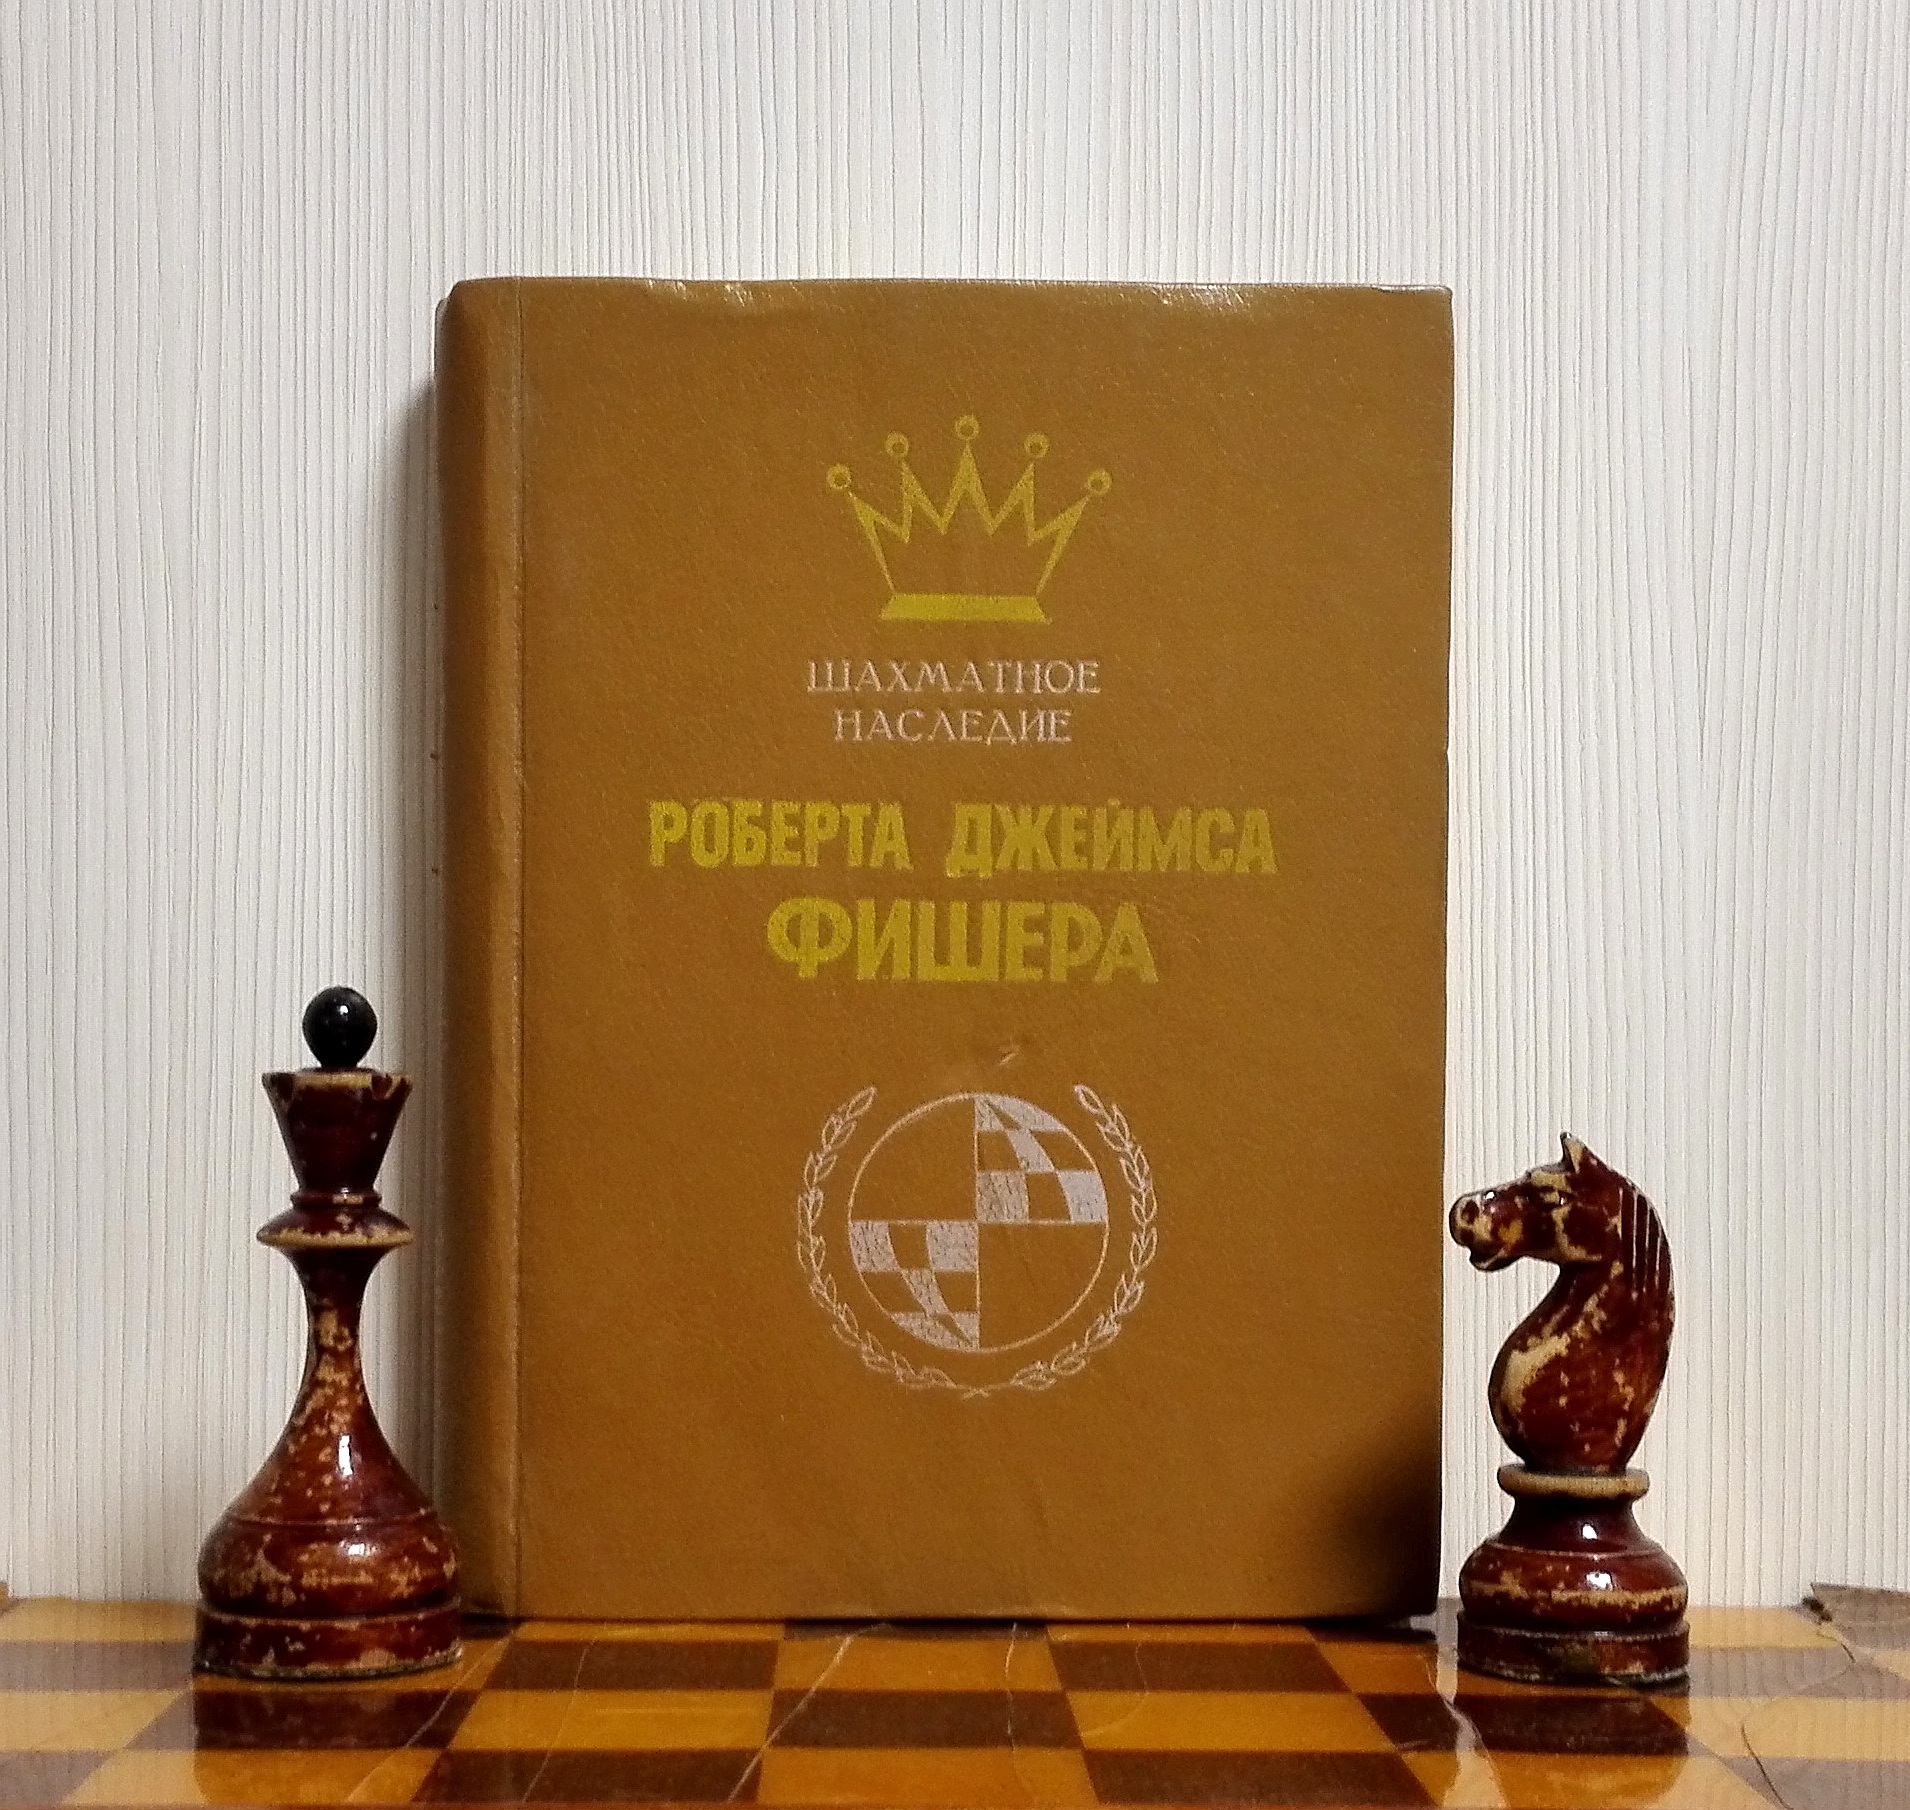 Bobby Fischer Vintage Soviet Chess Book. Soviet Chess Books